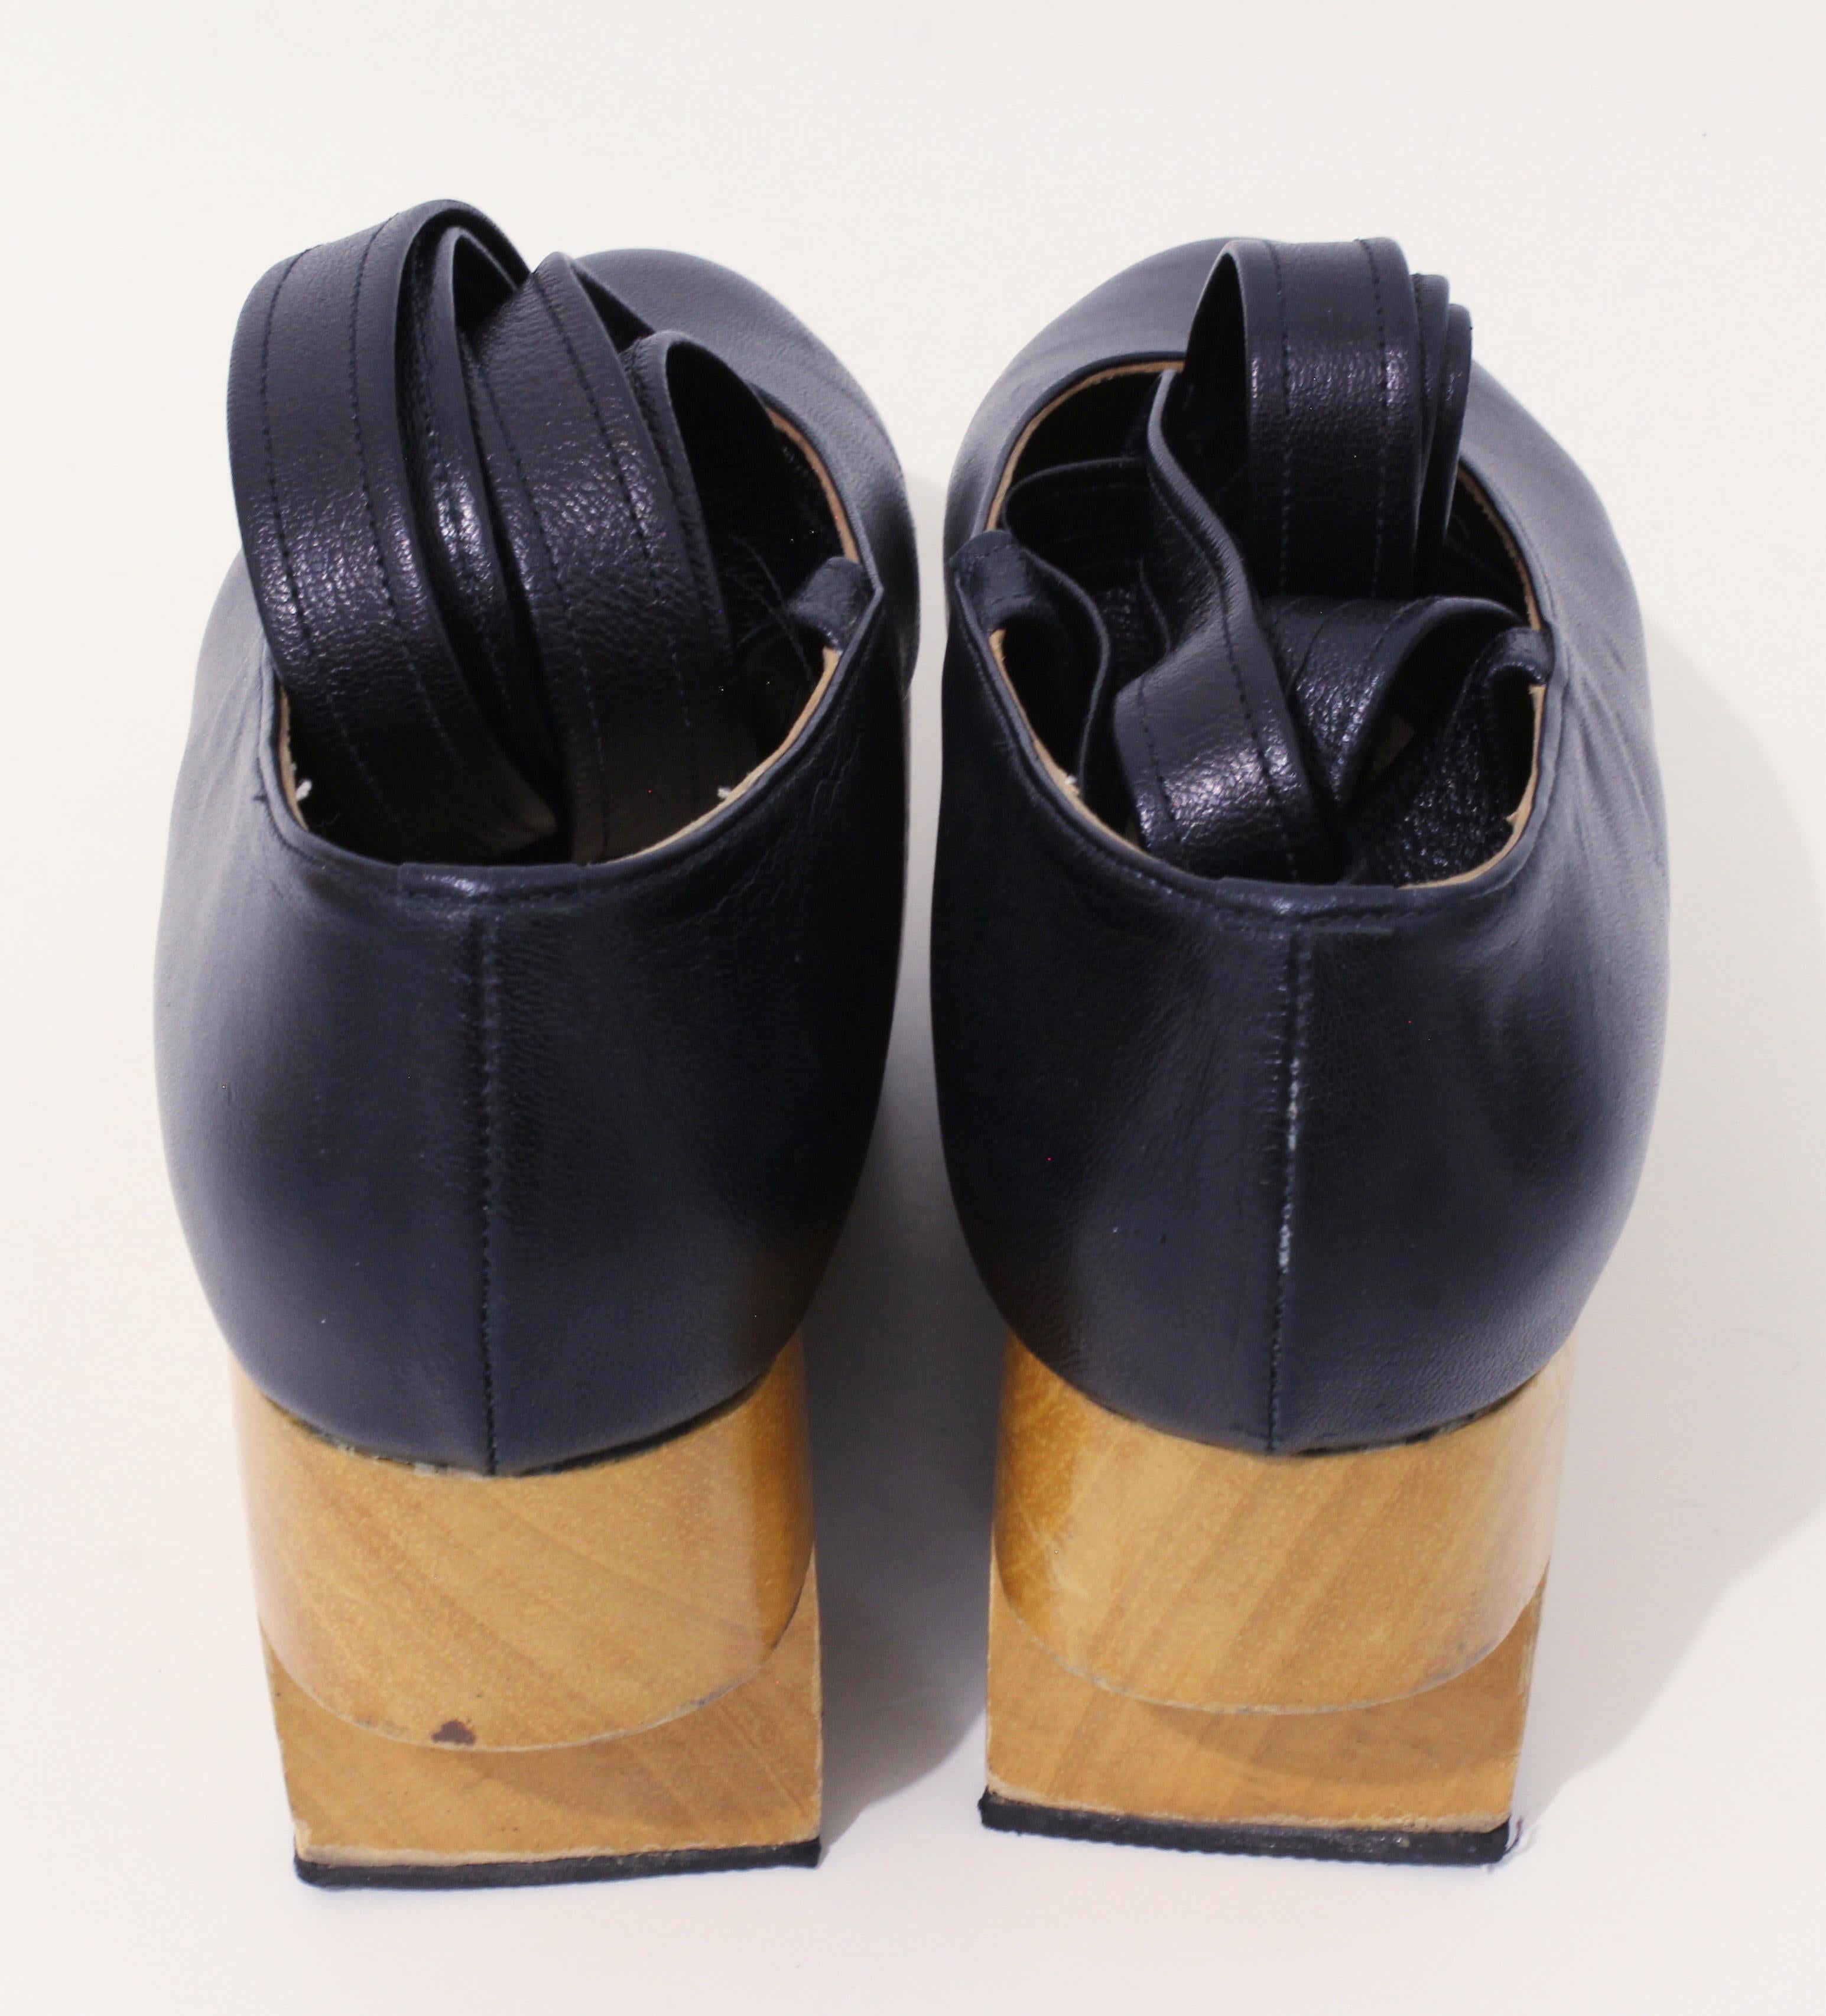 Vivienne Westwood Rocking Horse Shoes Black Leather Ballerina Platforms US6 UK5 1